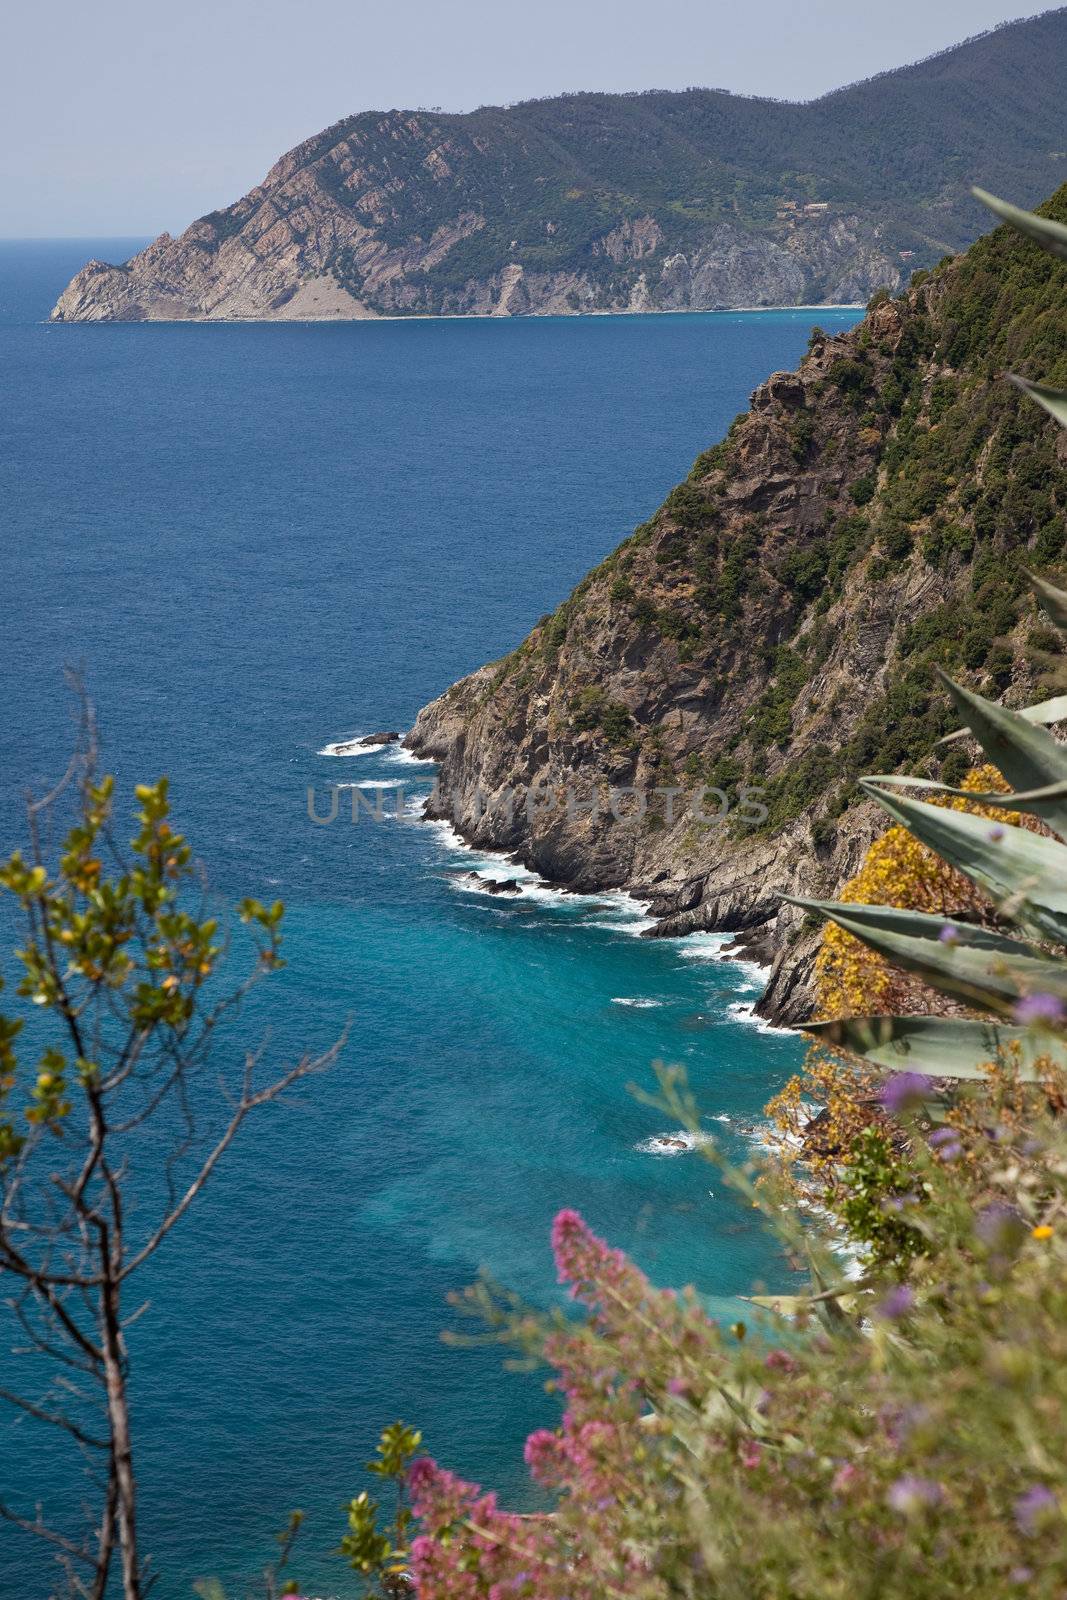 Rocky coast at the cinque terre region in Italy